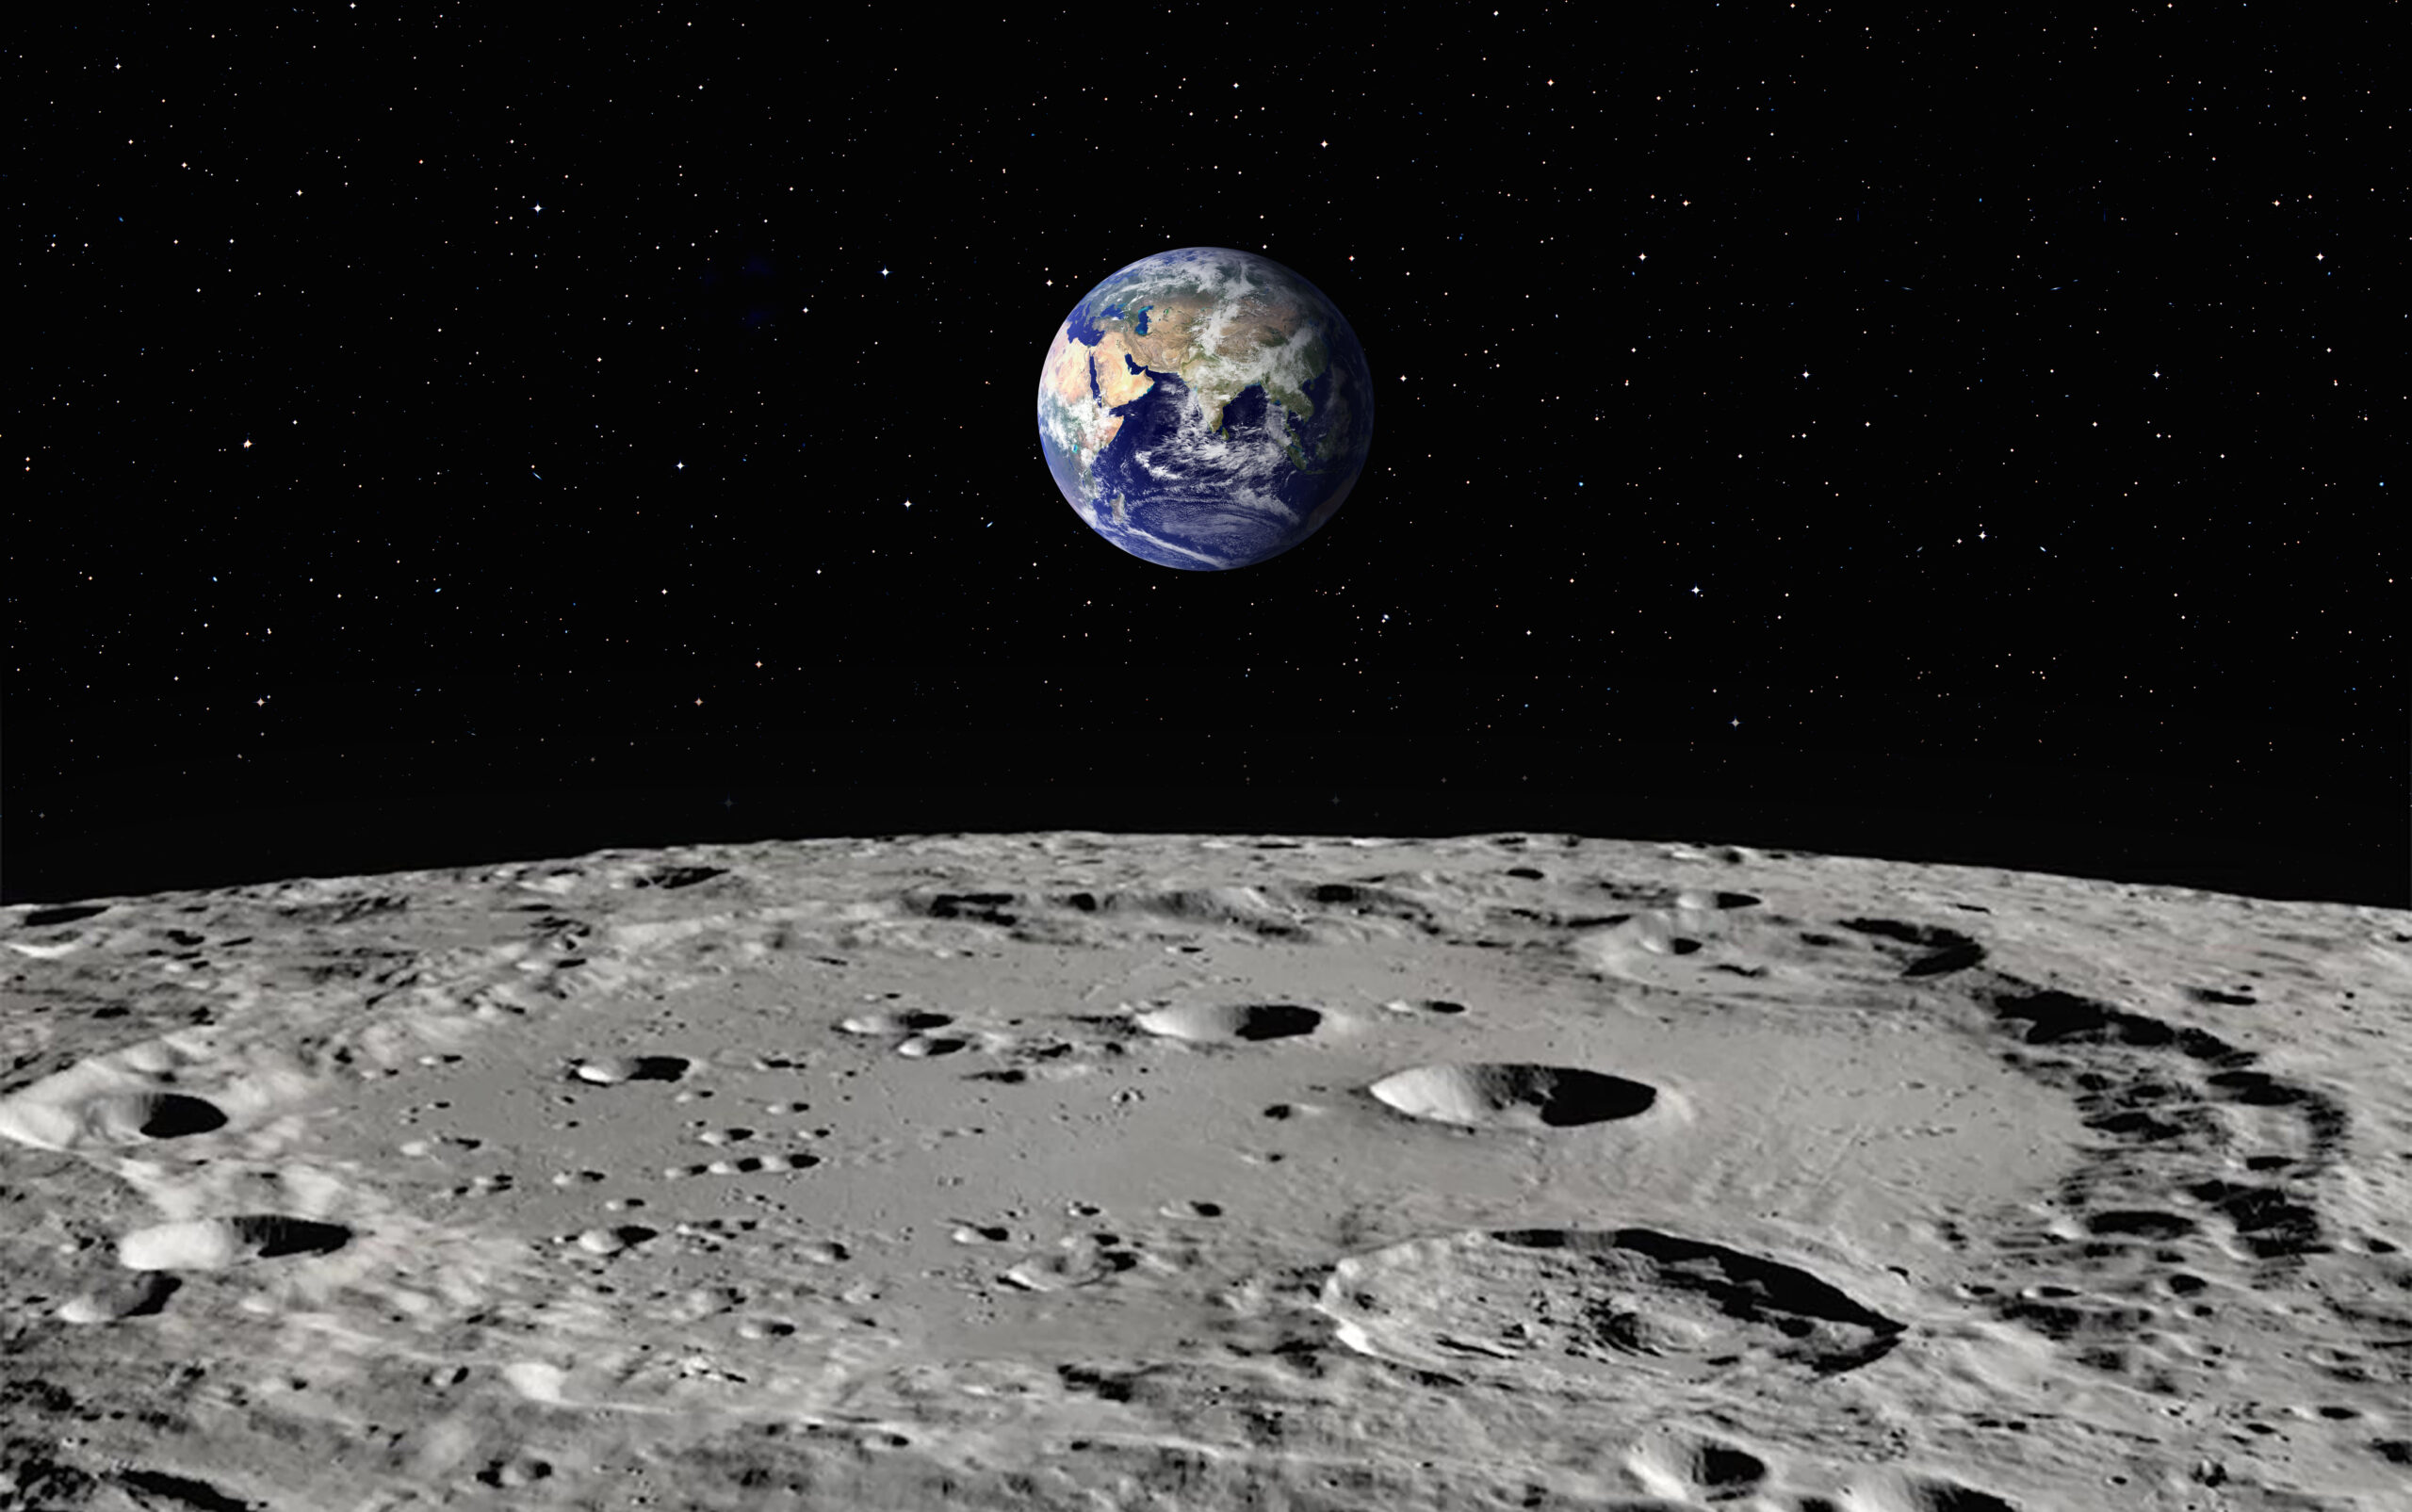 Tech Time Travel: Lunar Orbiter 1 Launch